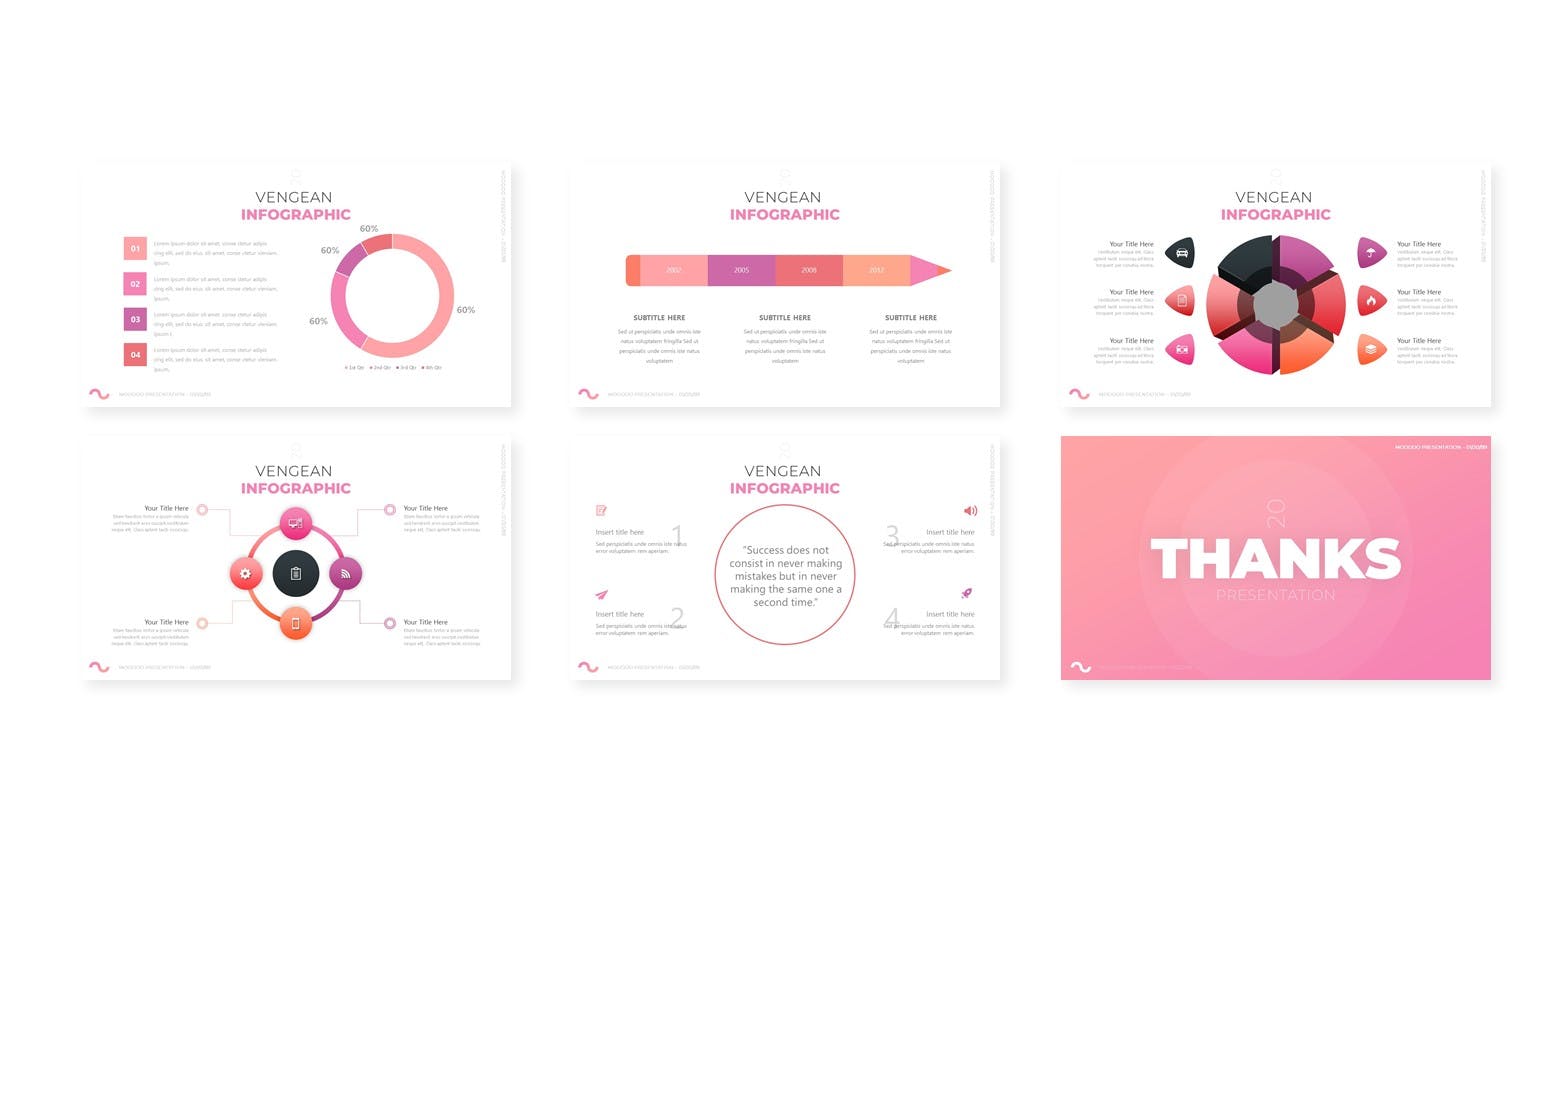 彩妆主题粉色背景产品展示PPT演示模板 Femine – Presentation Template设计素材模板